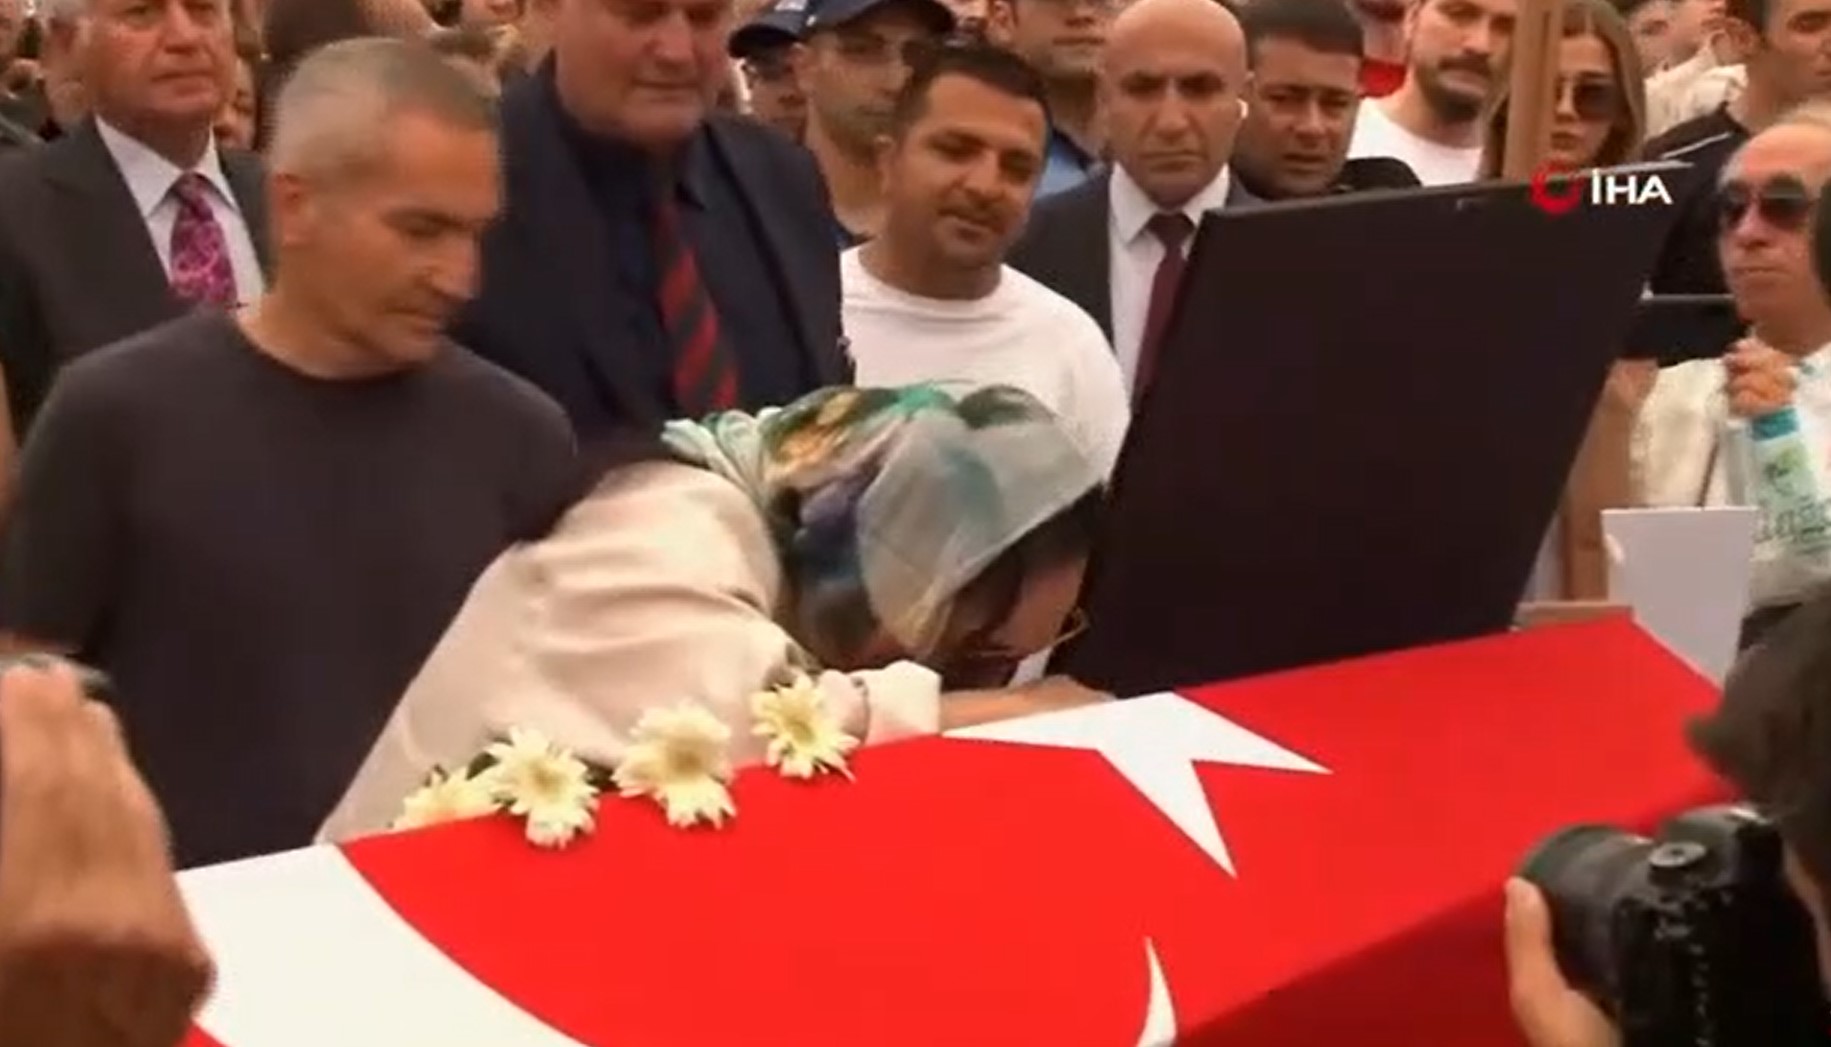 Türkan Şoray, Cüneyt Arkın'ın tabutuna sarılarak hüngür hüngür ağladı